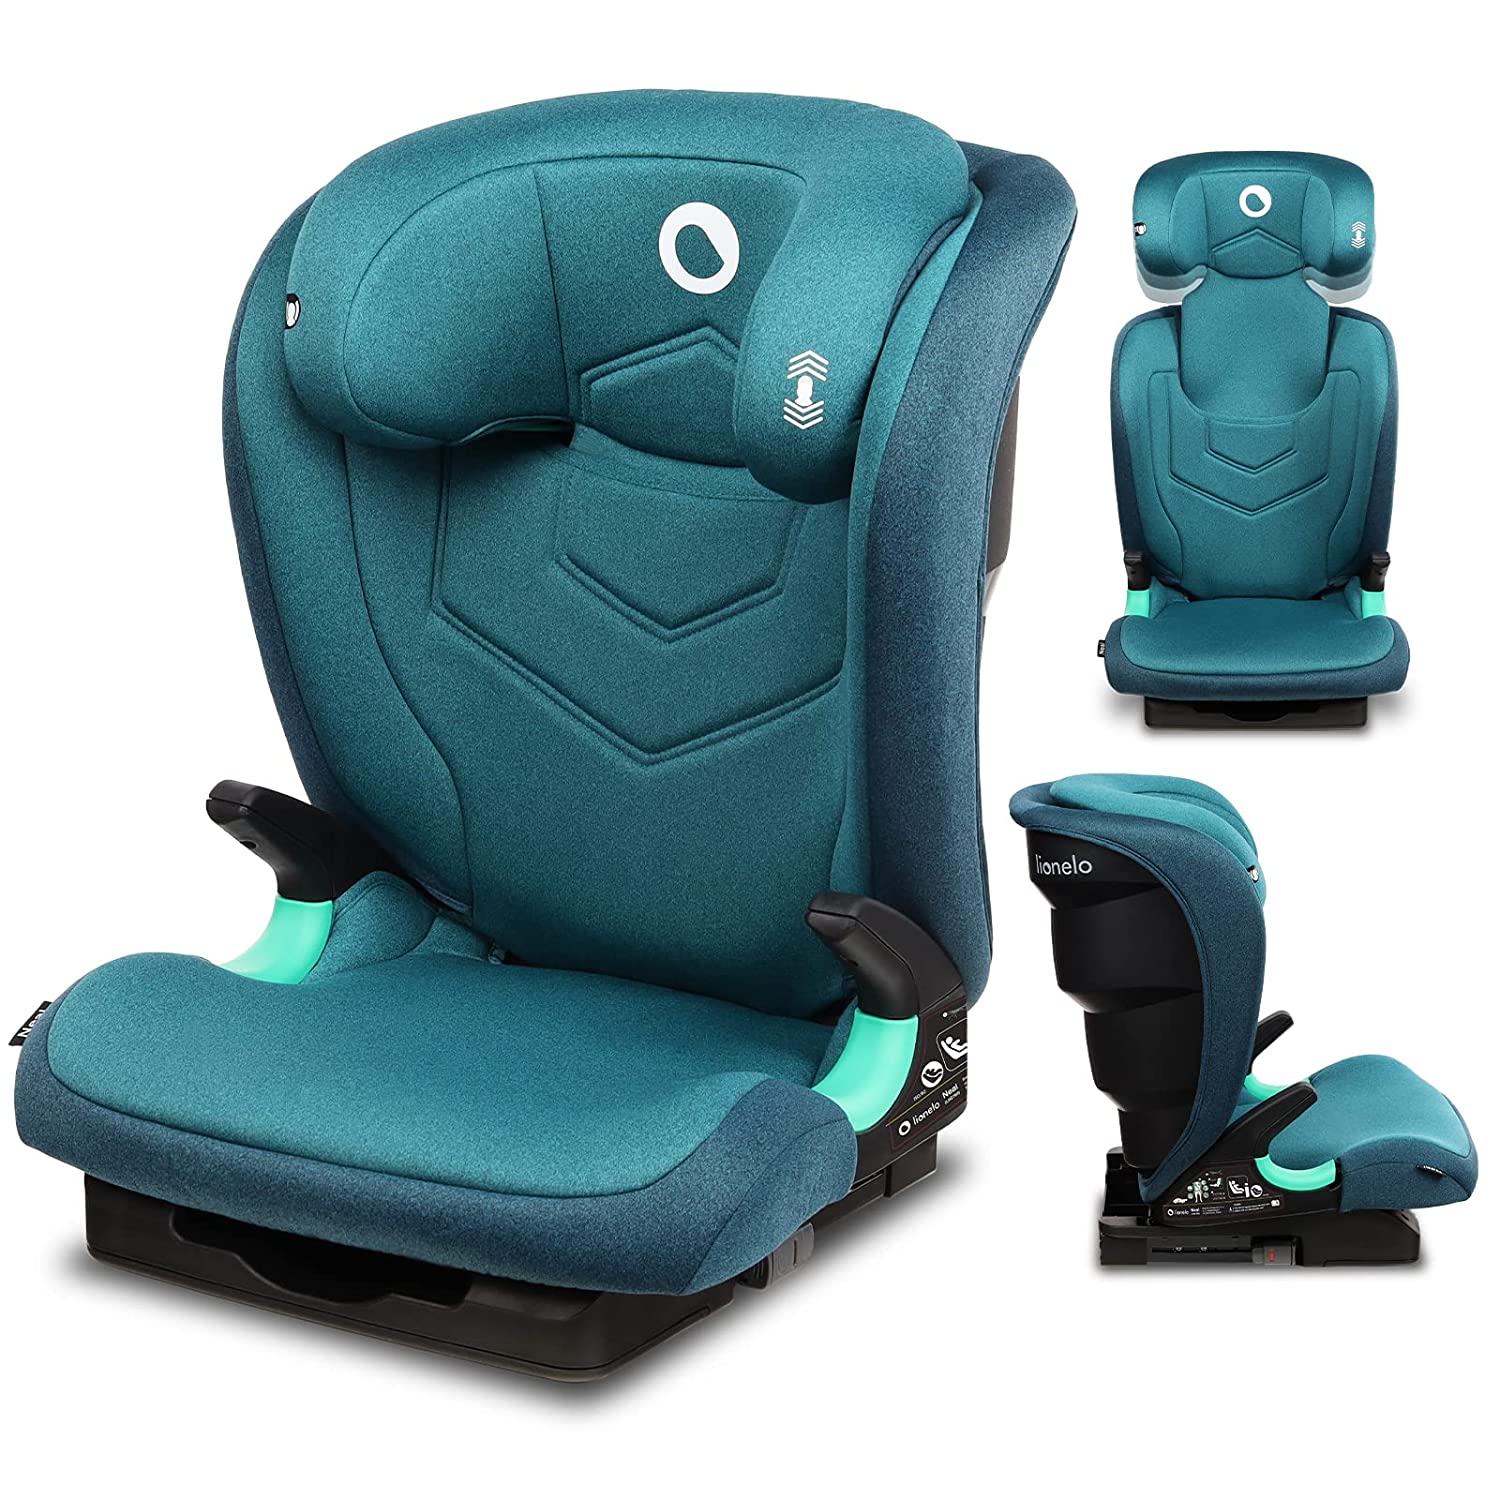 Lionelo Neal Child Seat 15-36 kg Isofix Side Protectors Marking i-Size 3-Way Adjustable Backrest Height-Adjustable Headrest Ventilation System (Turkis)